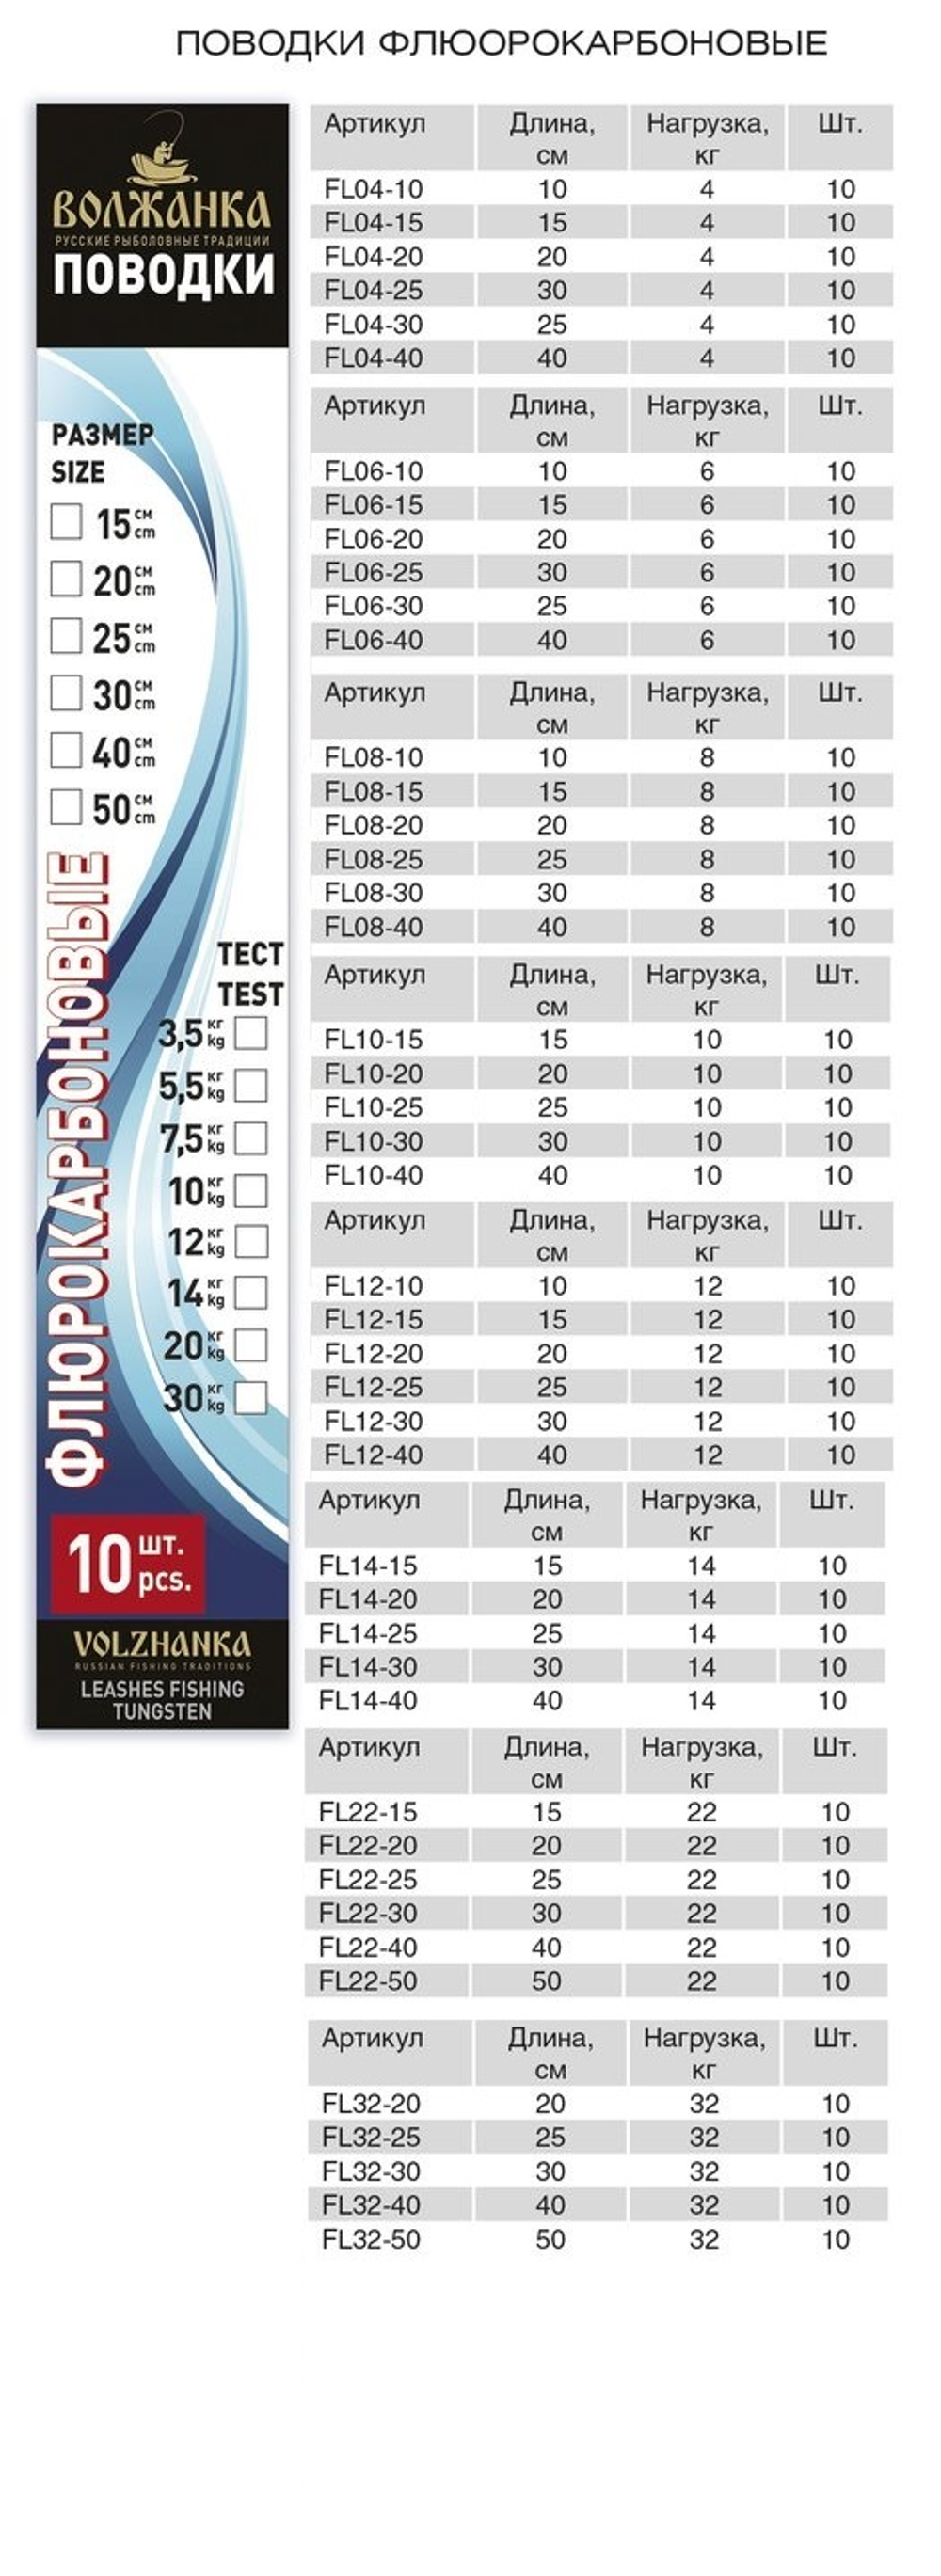 Набор флюрокарбоновых поводков - 50см,32кг (10шт/уп)